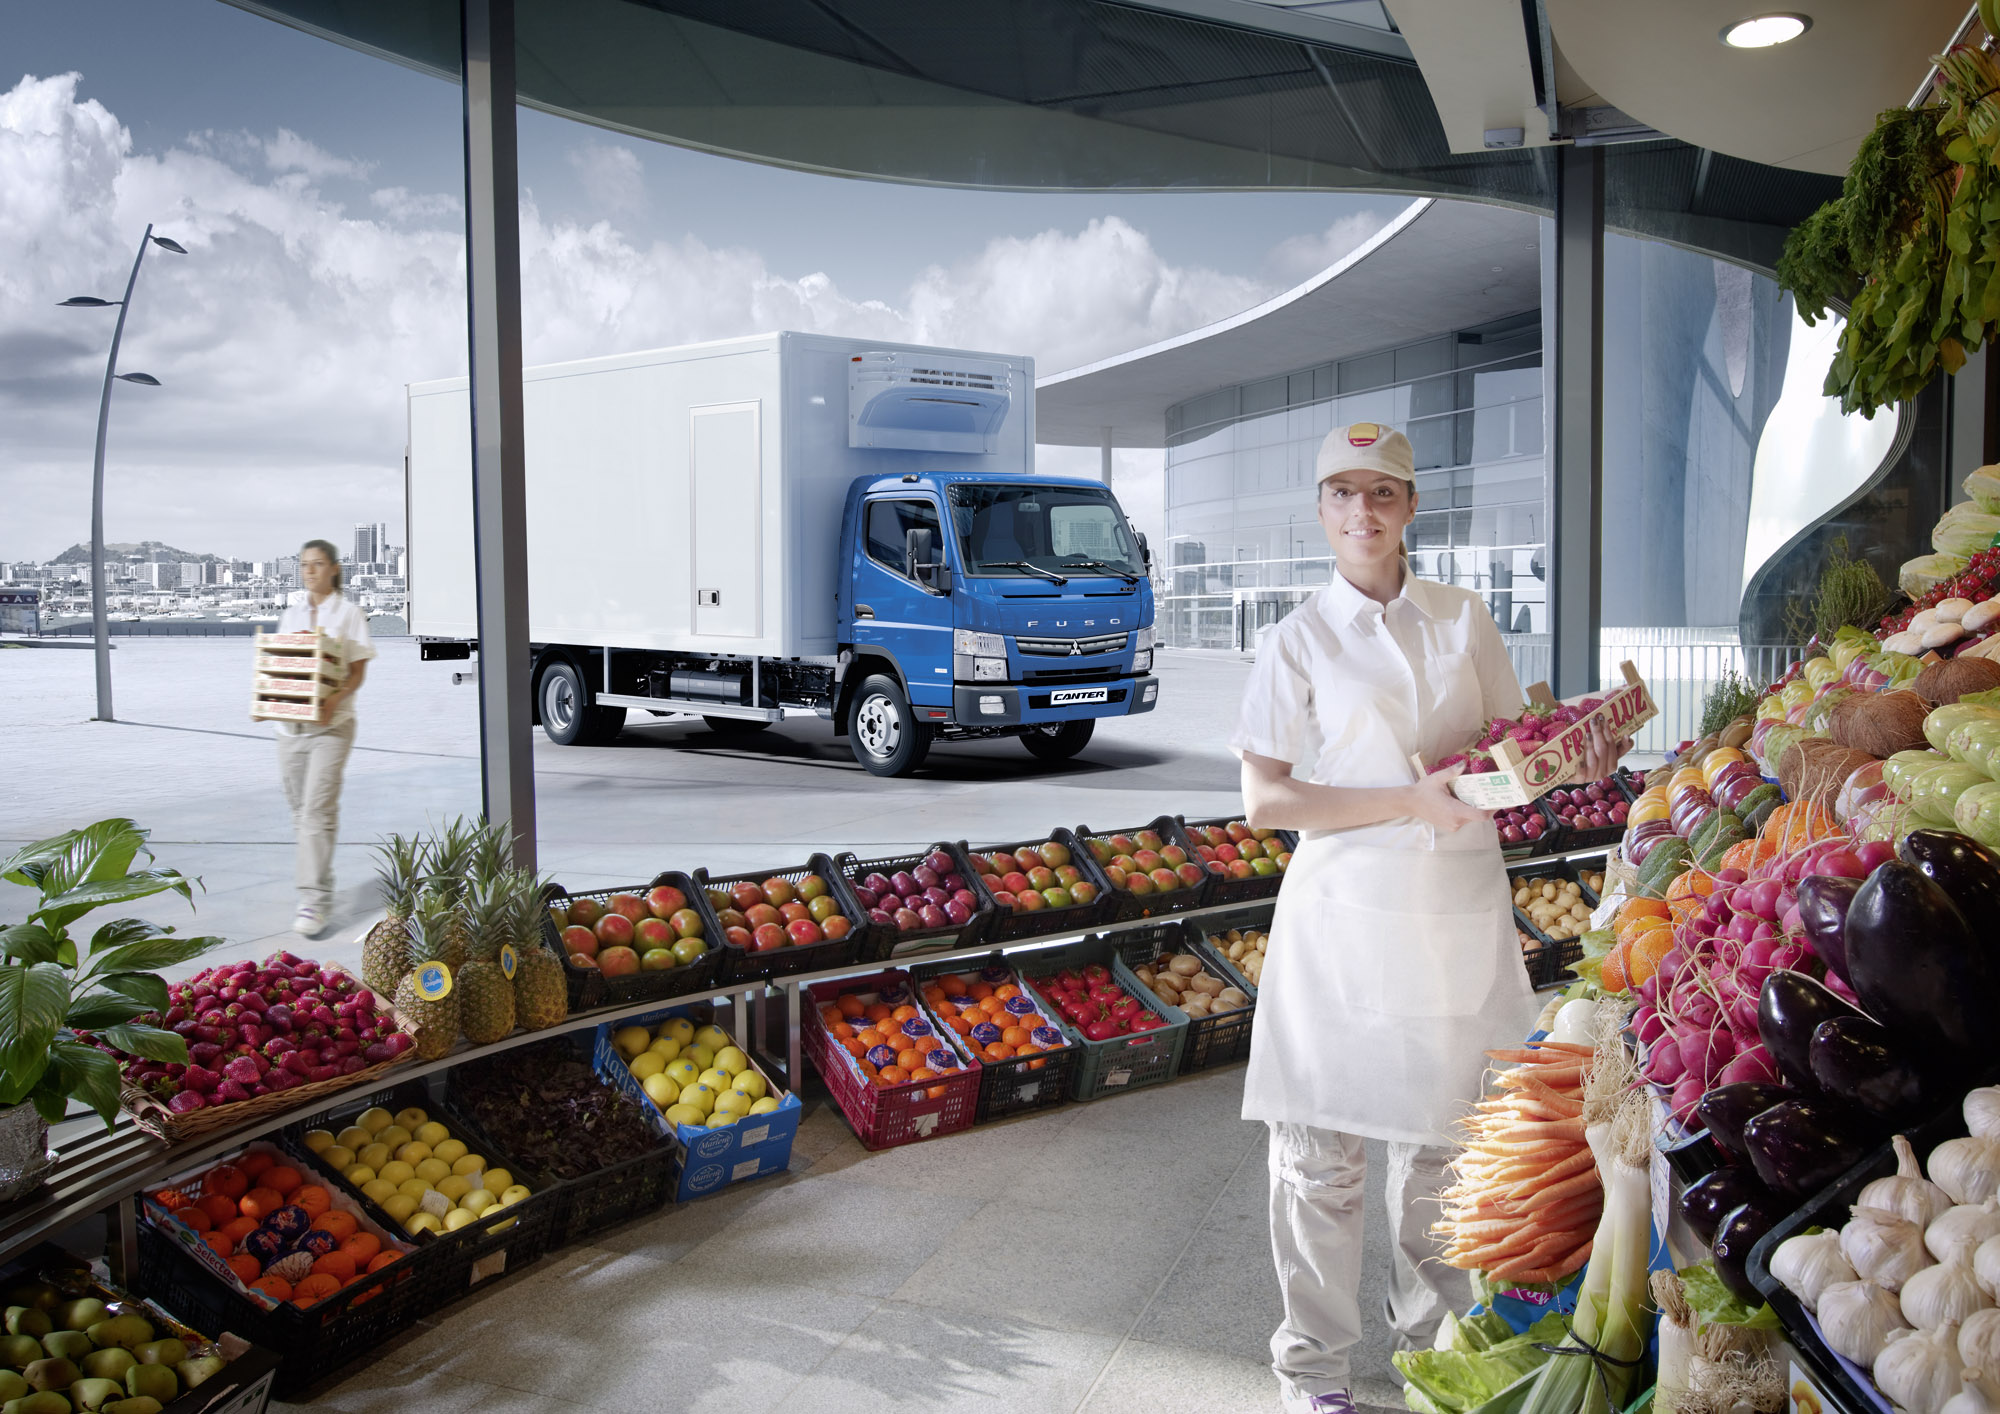 Trabajadora sostiene una caja de frutillas en una tienda de frutas y verduras, y por delante de la tienda hay un camion fuso celeste estacionado para que descarguen caja de frutas